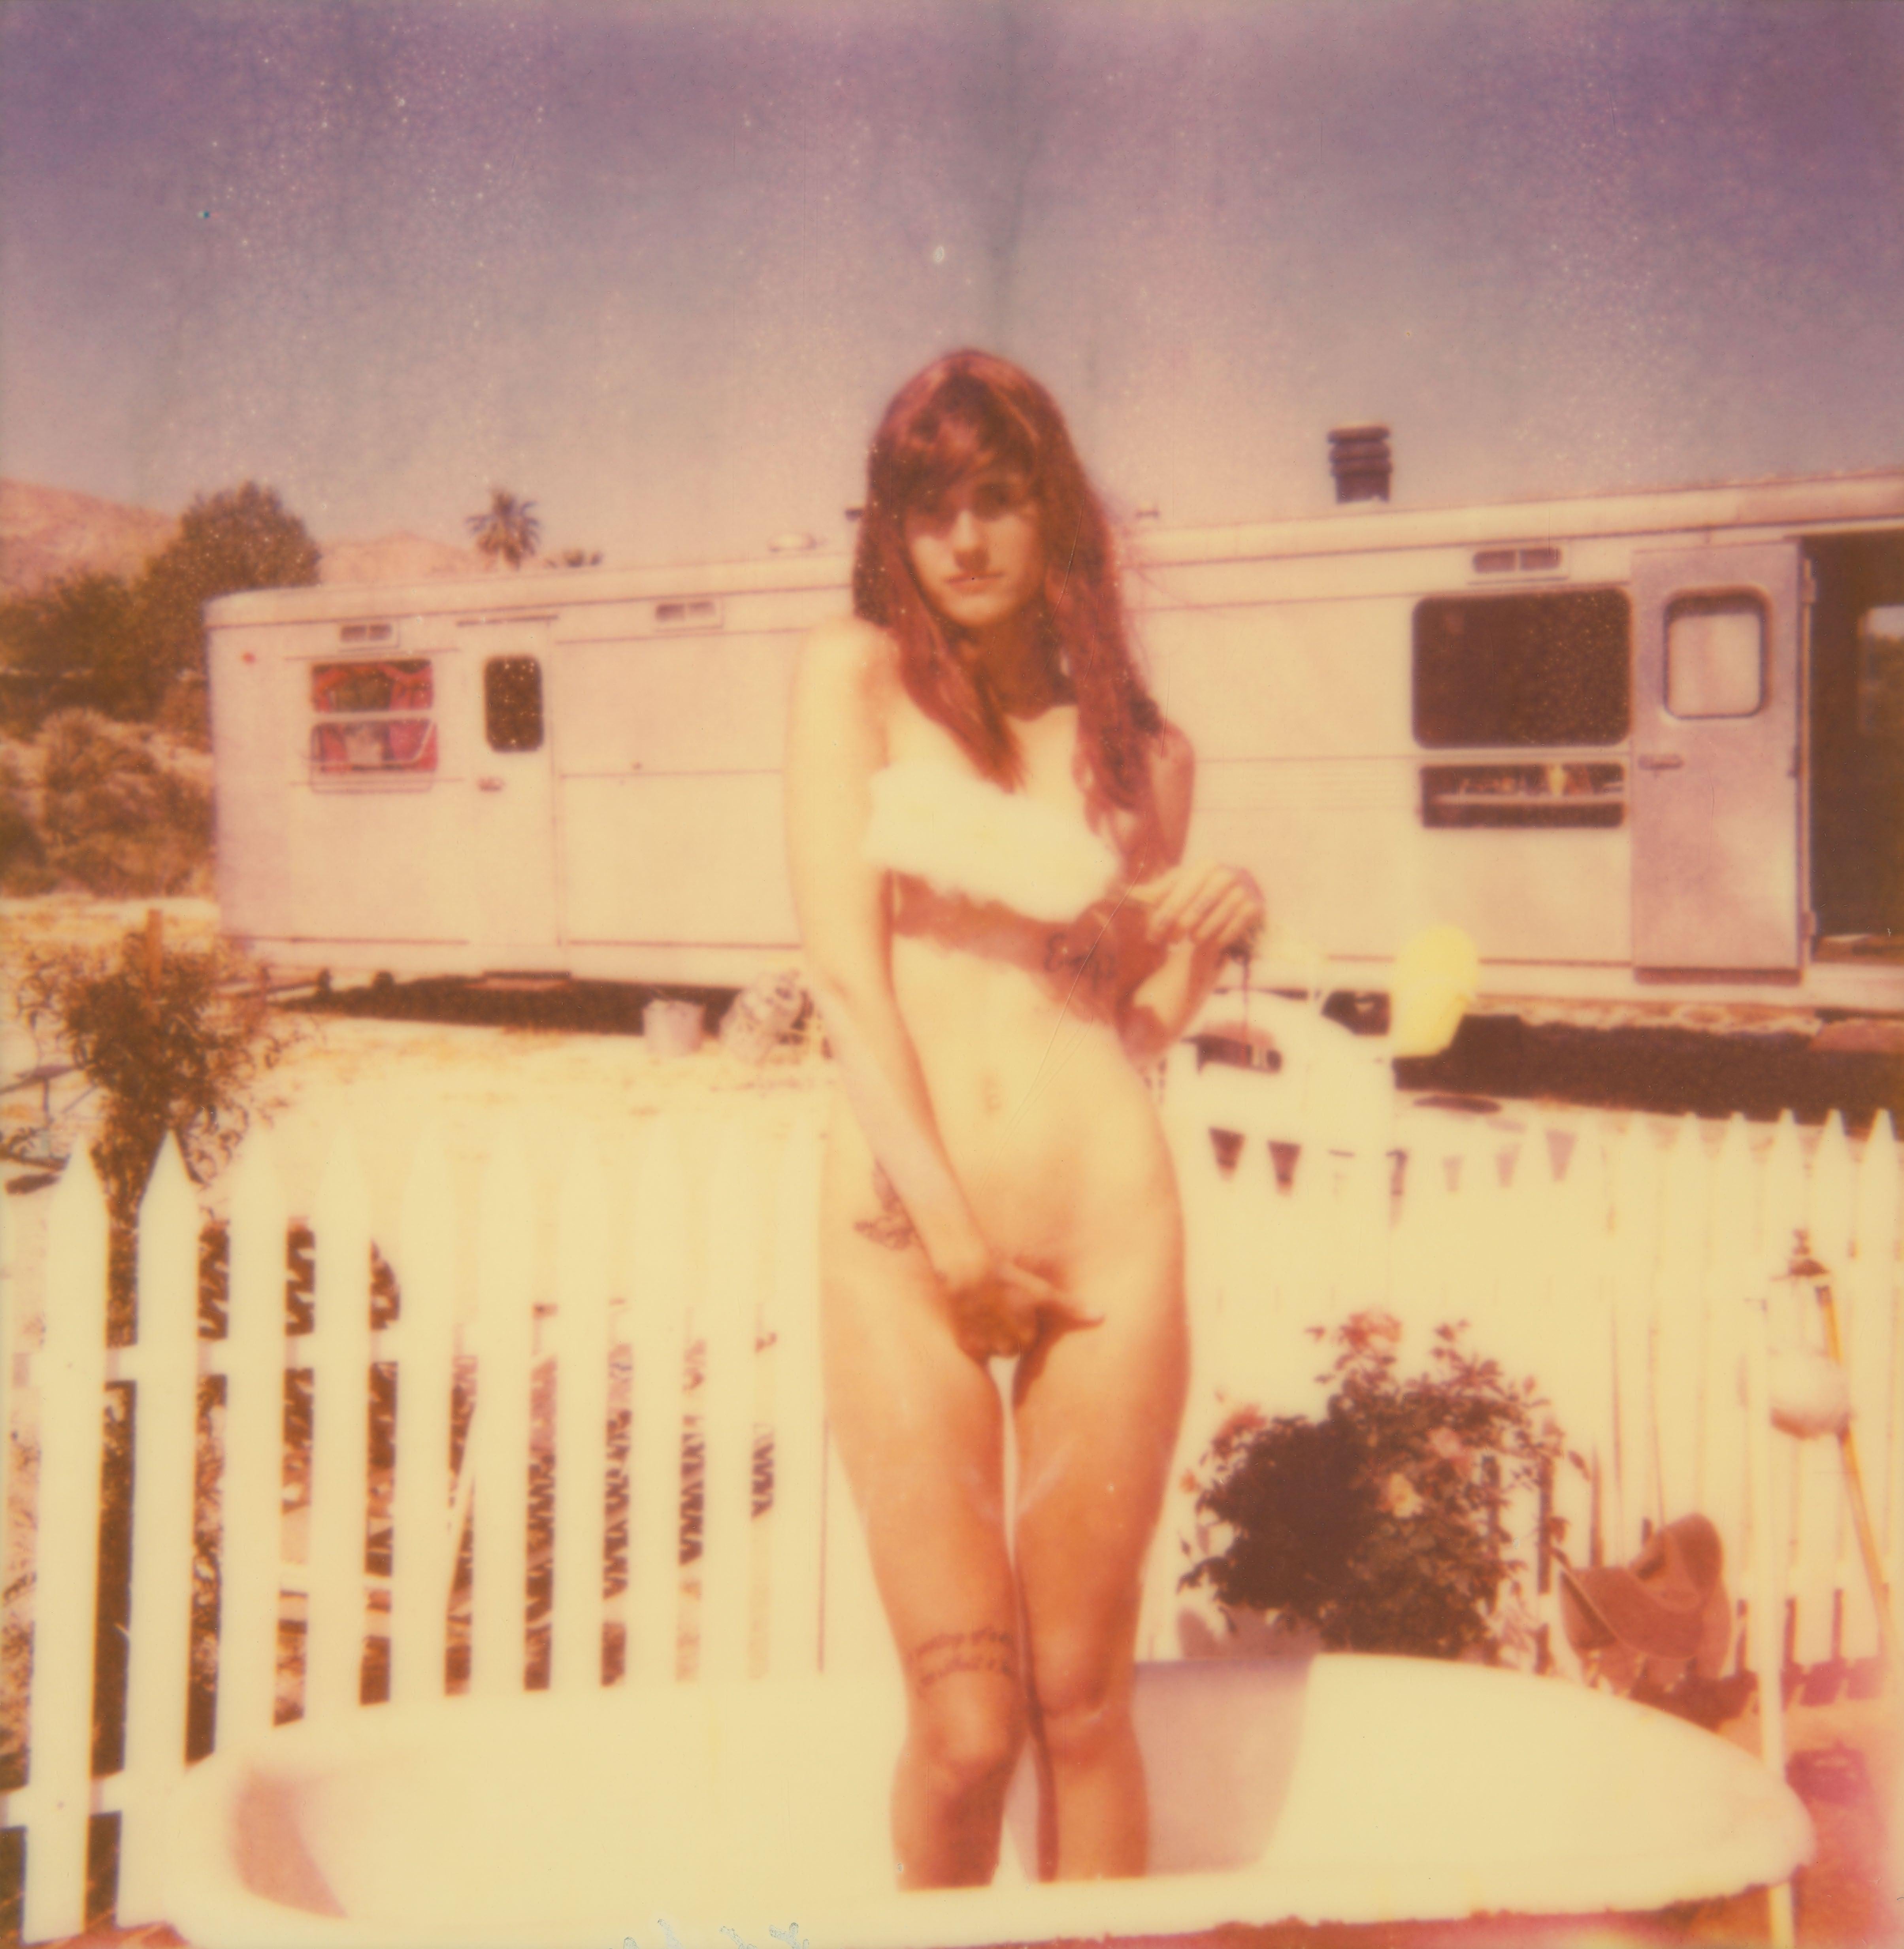 The Girl II (Behind the White Picket Fence - La fille II - 38x36cm - basé sur un Polaroid